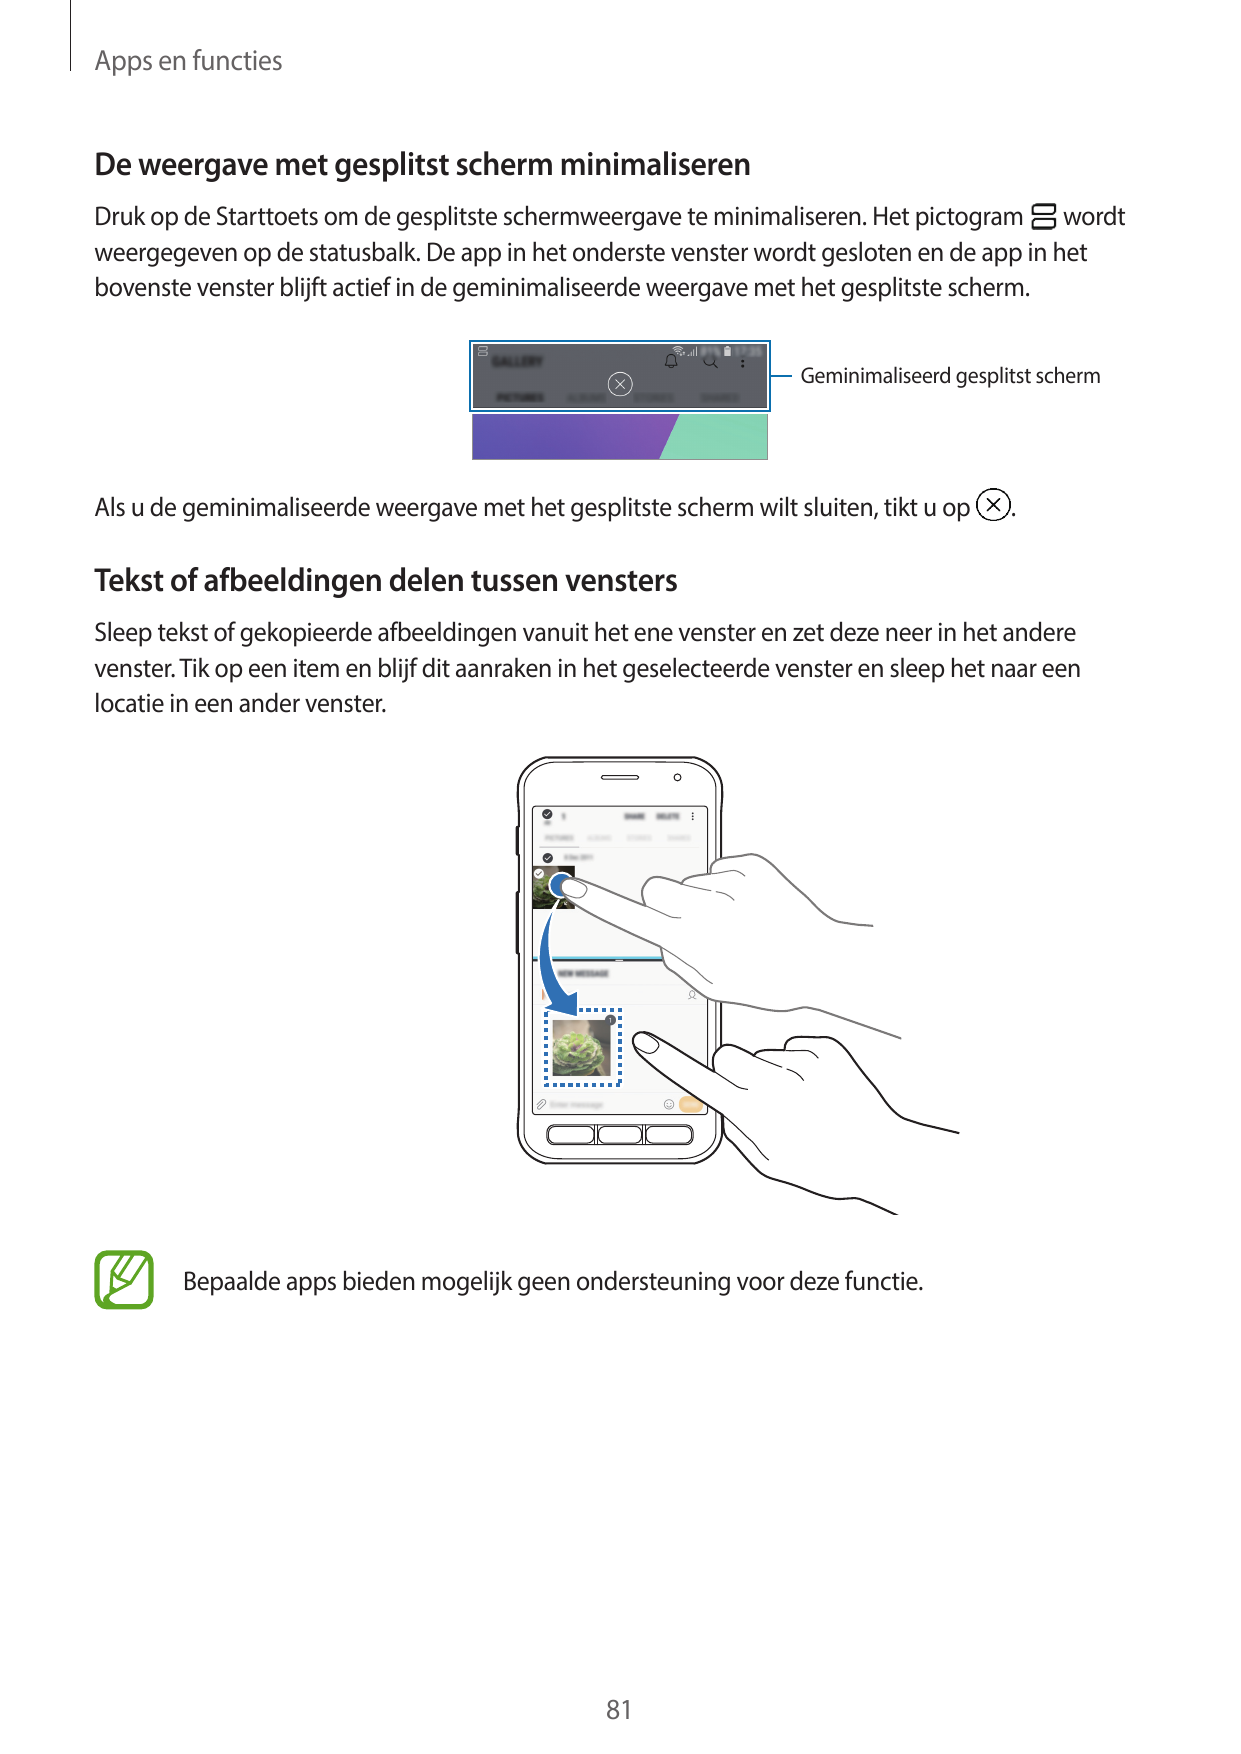 Apps en functiesDe weergave met gesplitst scherm minimaliserenDruk op de Starttoets om de gesplitste schermweergave te minimalis